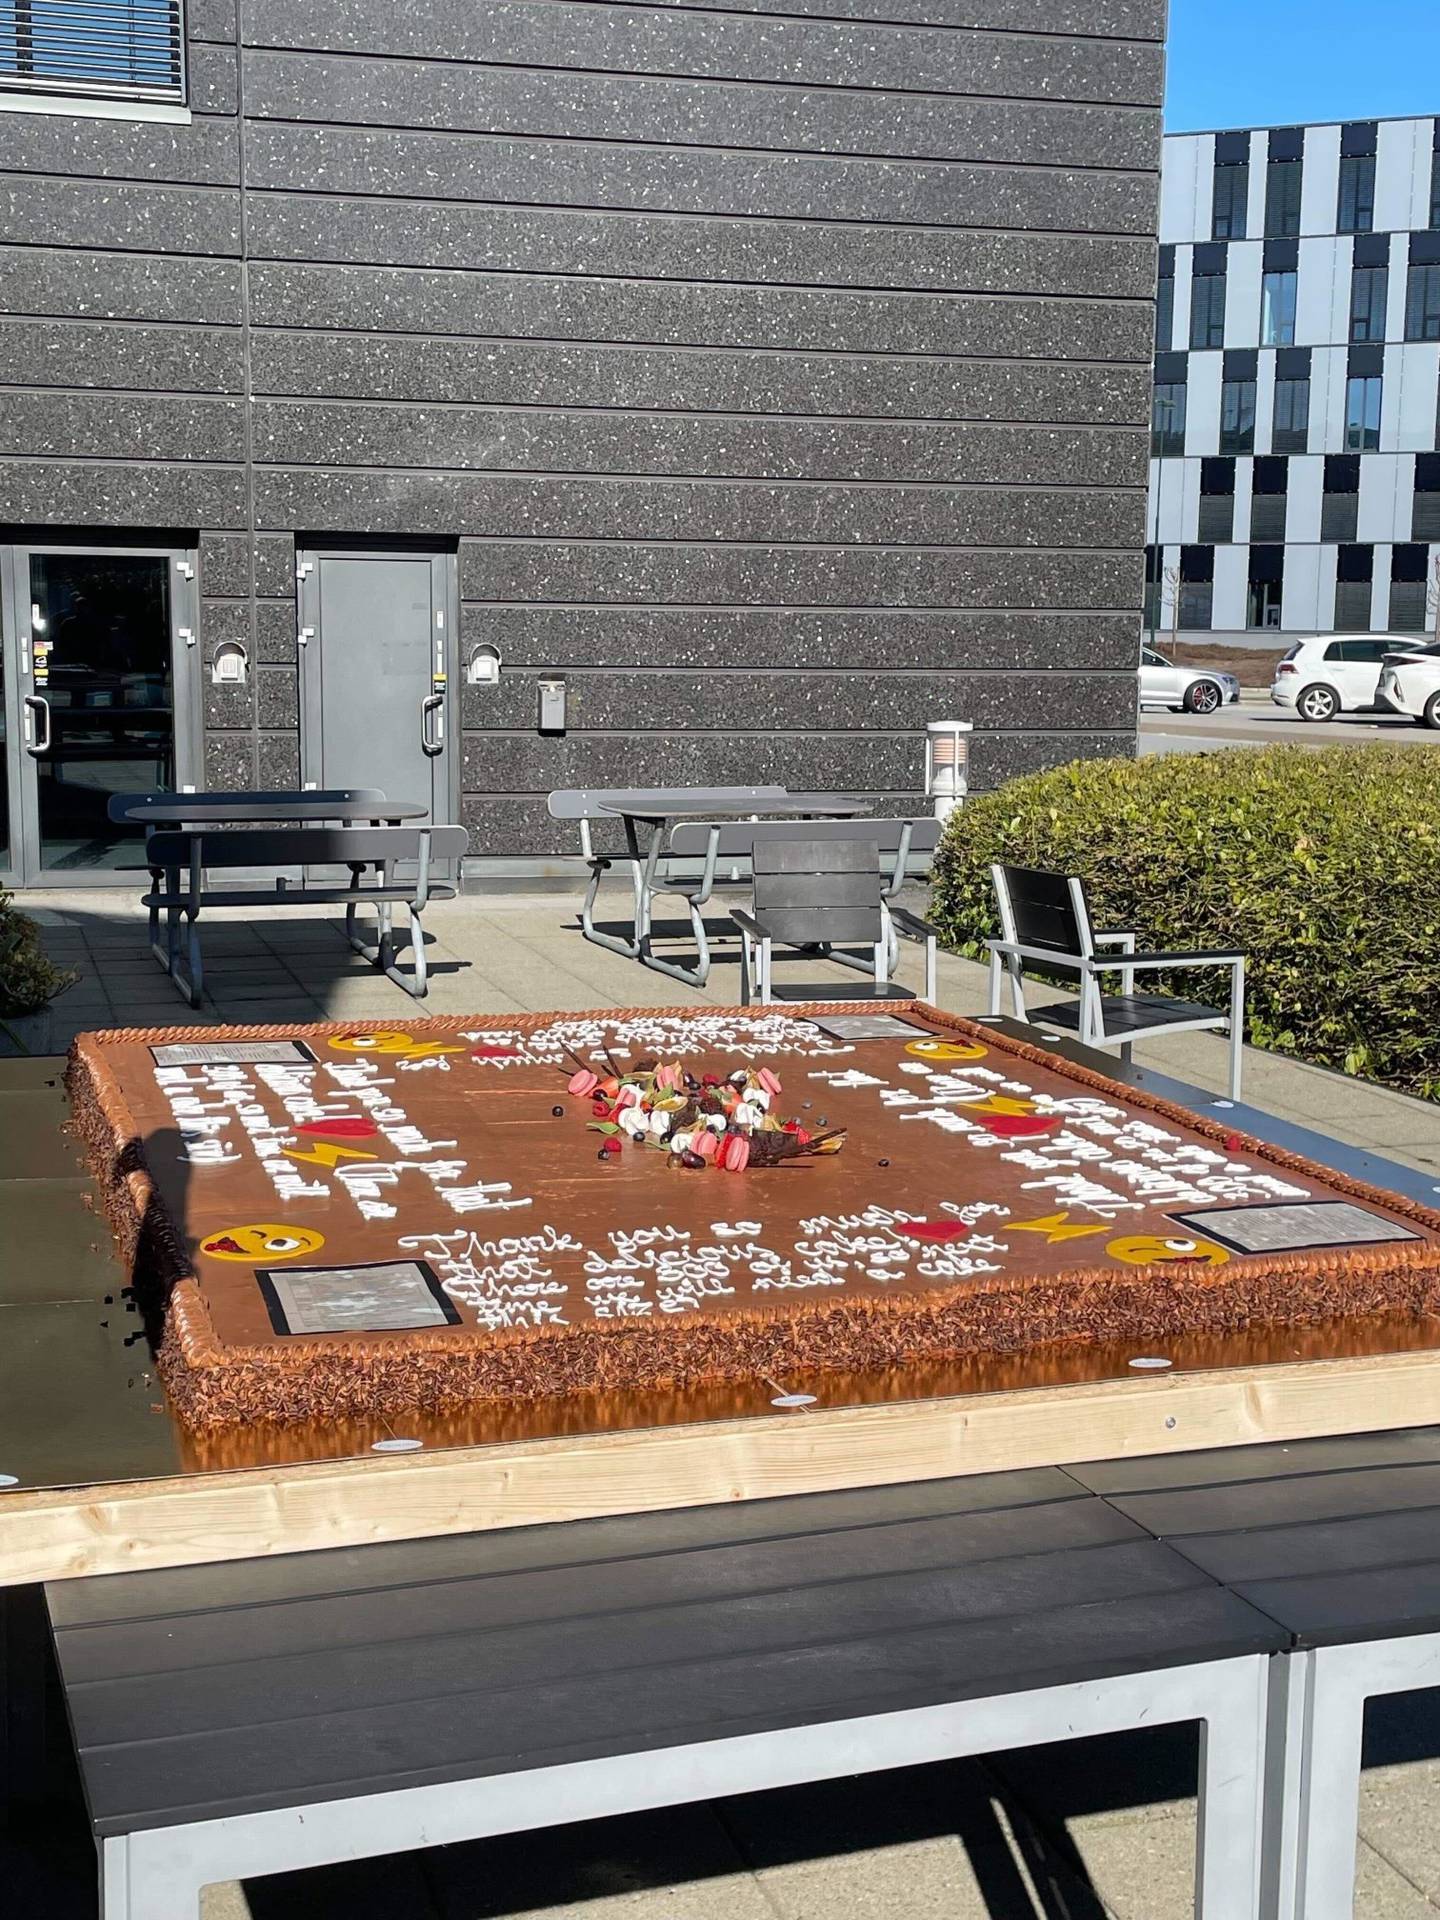 Easee sendte denne kaken, 2 x 2 meter stor, i retur til Zaptec og påpekte at Easee hadde 300 ansatte og trengte denne kakestørrelsen neste gang Zaptec skulle sende kake. Kaken gikk ikke gjennom dørene hos Ipark hvor Zaptec holder hus.